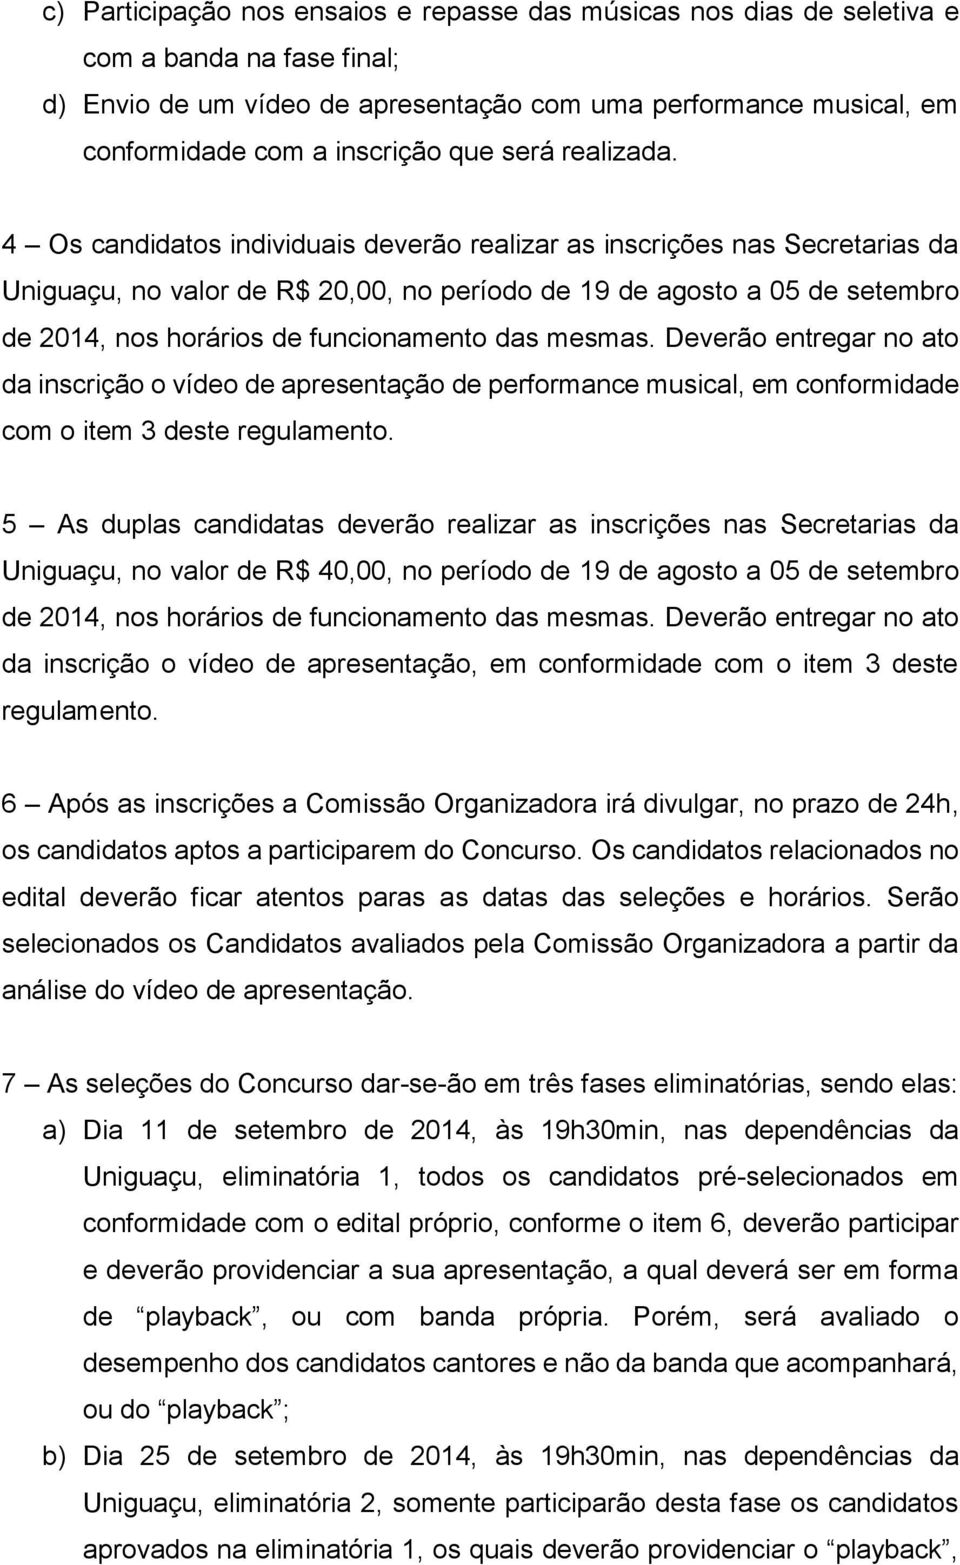 4 Os candidatos individuais deverão realizar as inscrições nas Secretarias da Uniguaçu, no valor de R$ 20,00, no período de 19 de agosto a 05 de setembro de 2014, nos horários de funcionamento das